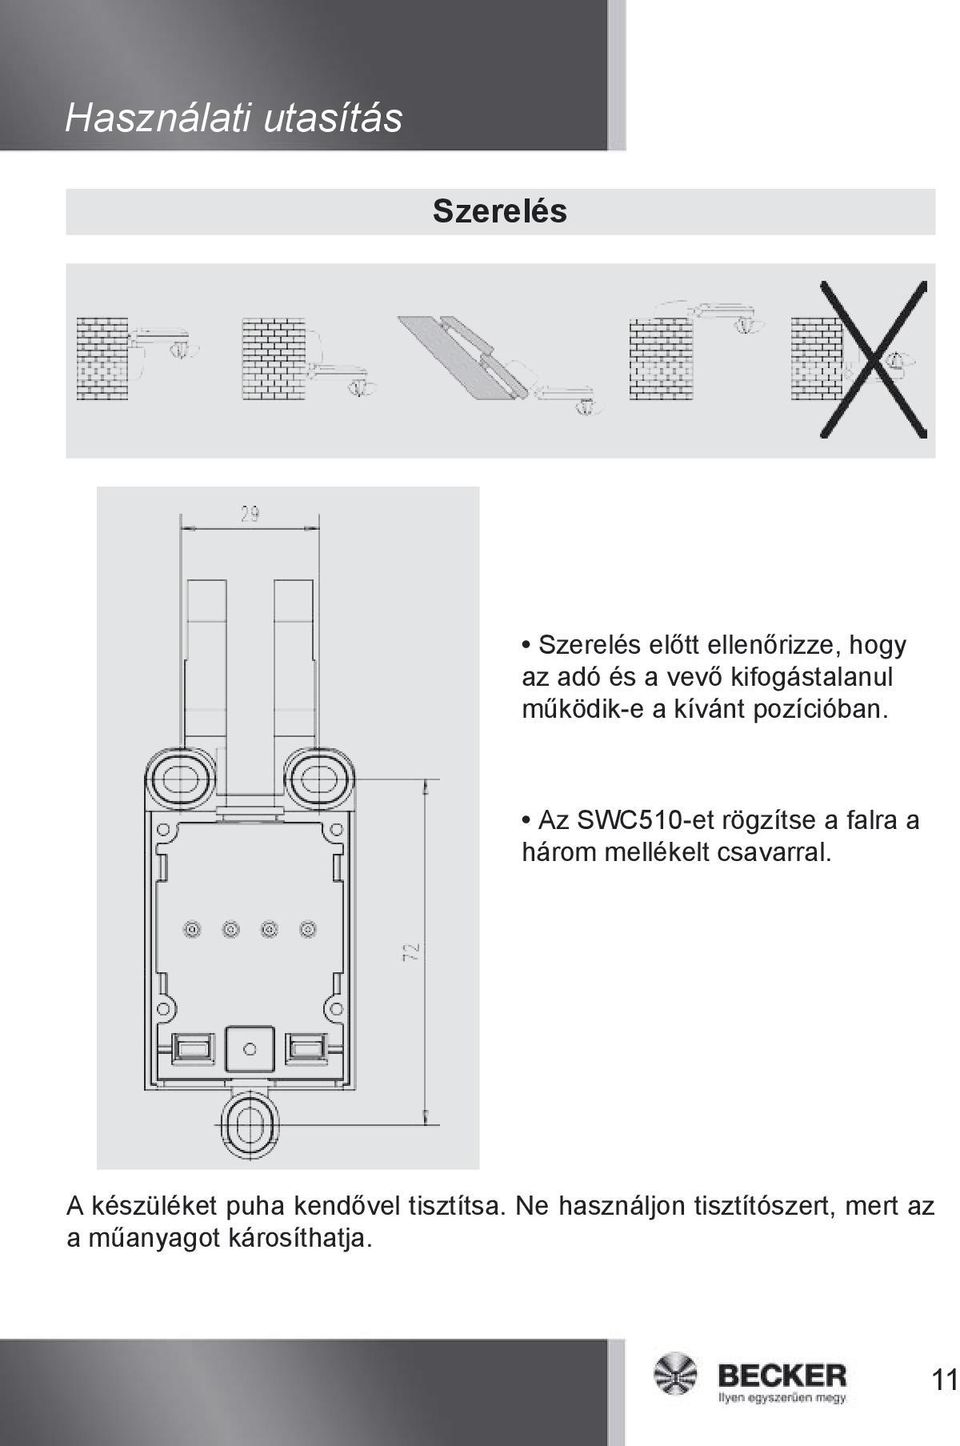 Az SWC510-et rögzítse a falra a három mellékelt csavarral.